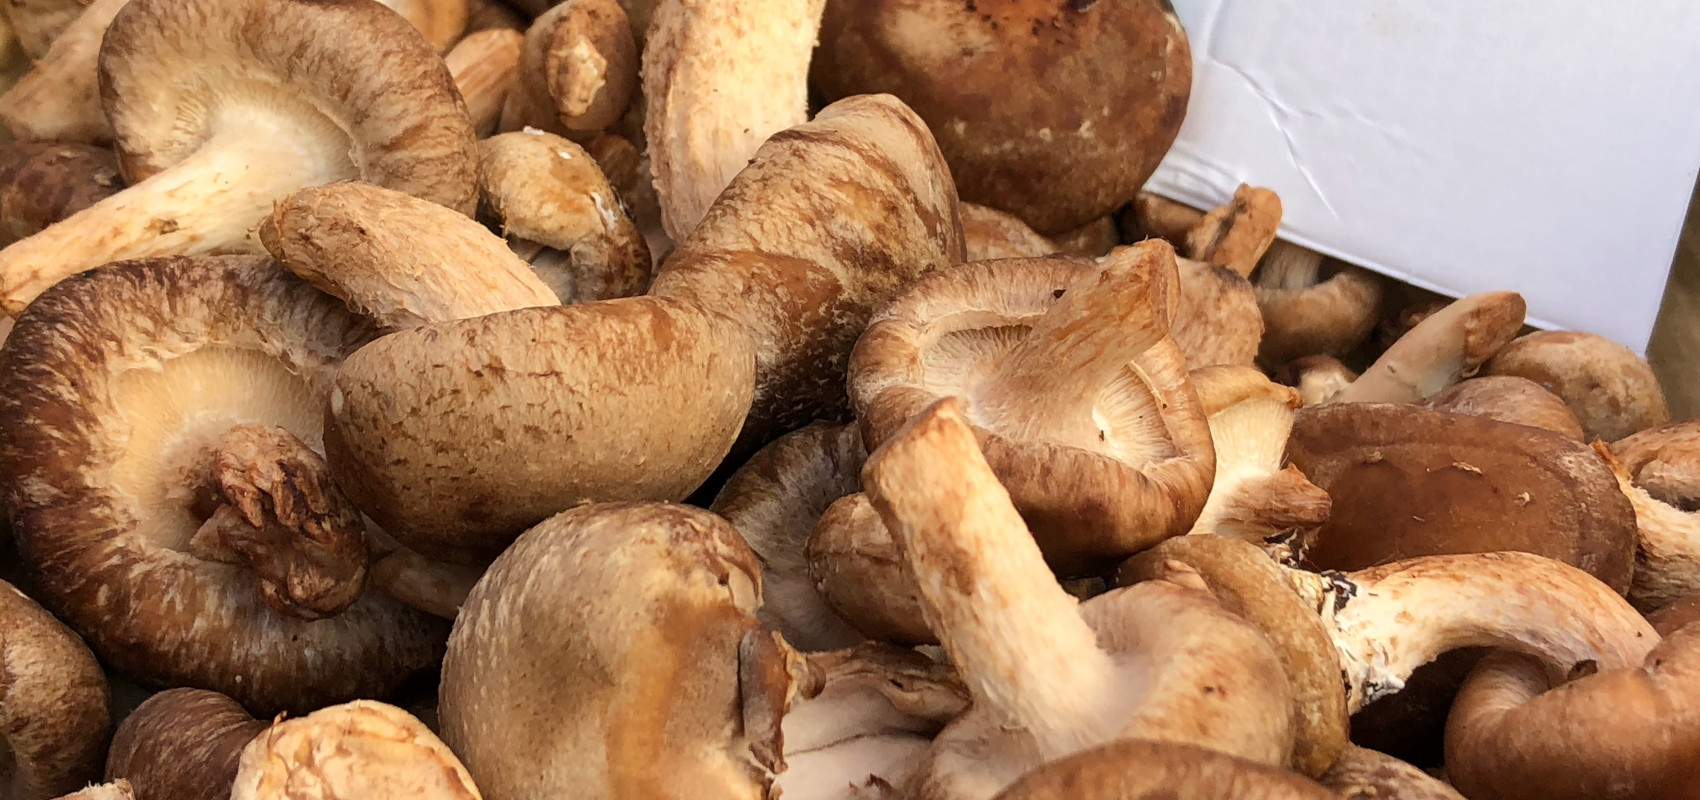 Suszenie grzybów – jak to robić poprawnie?